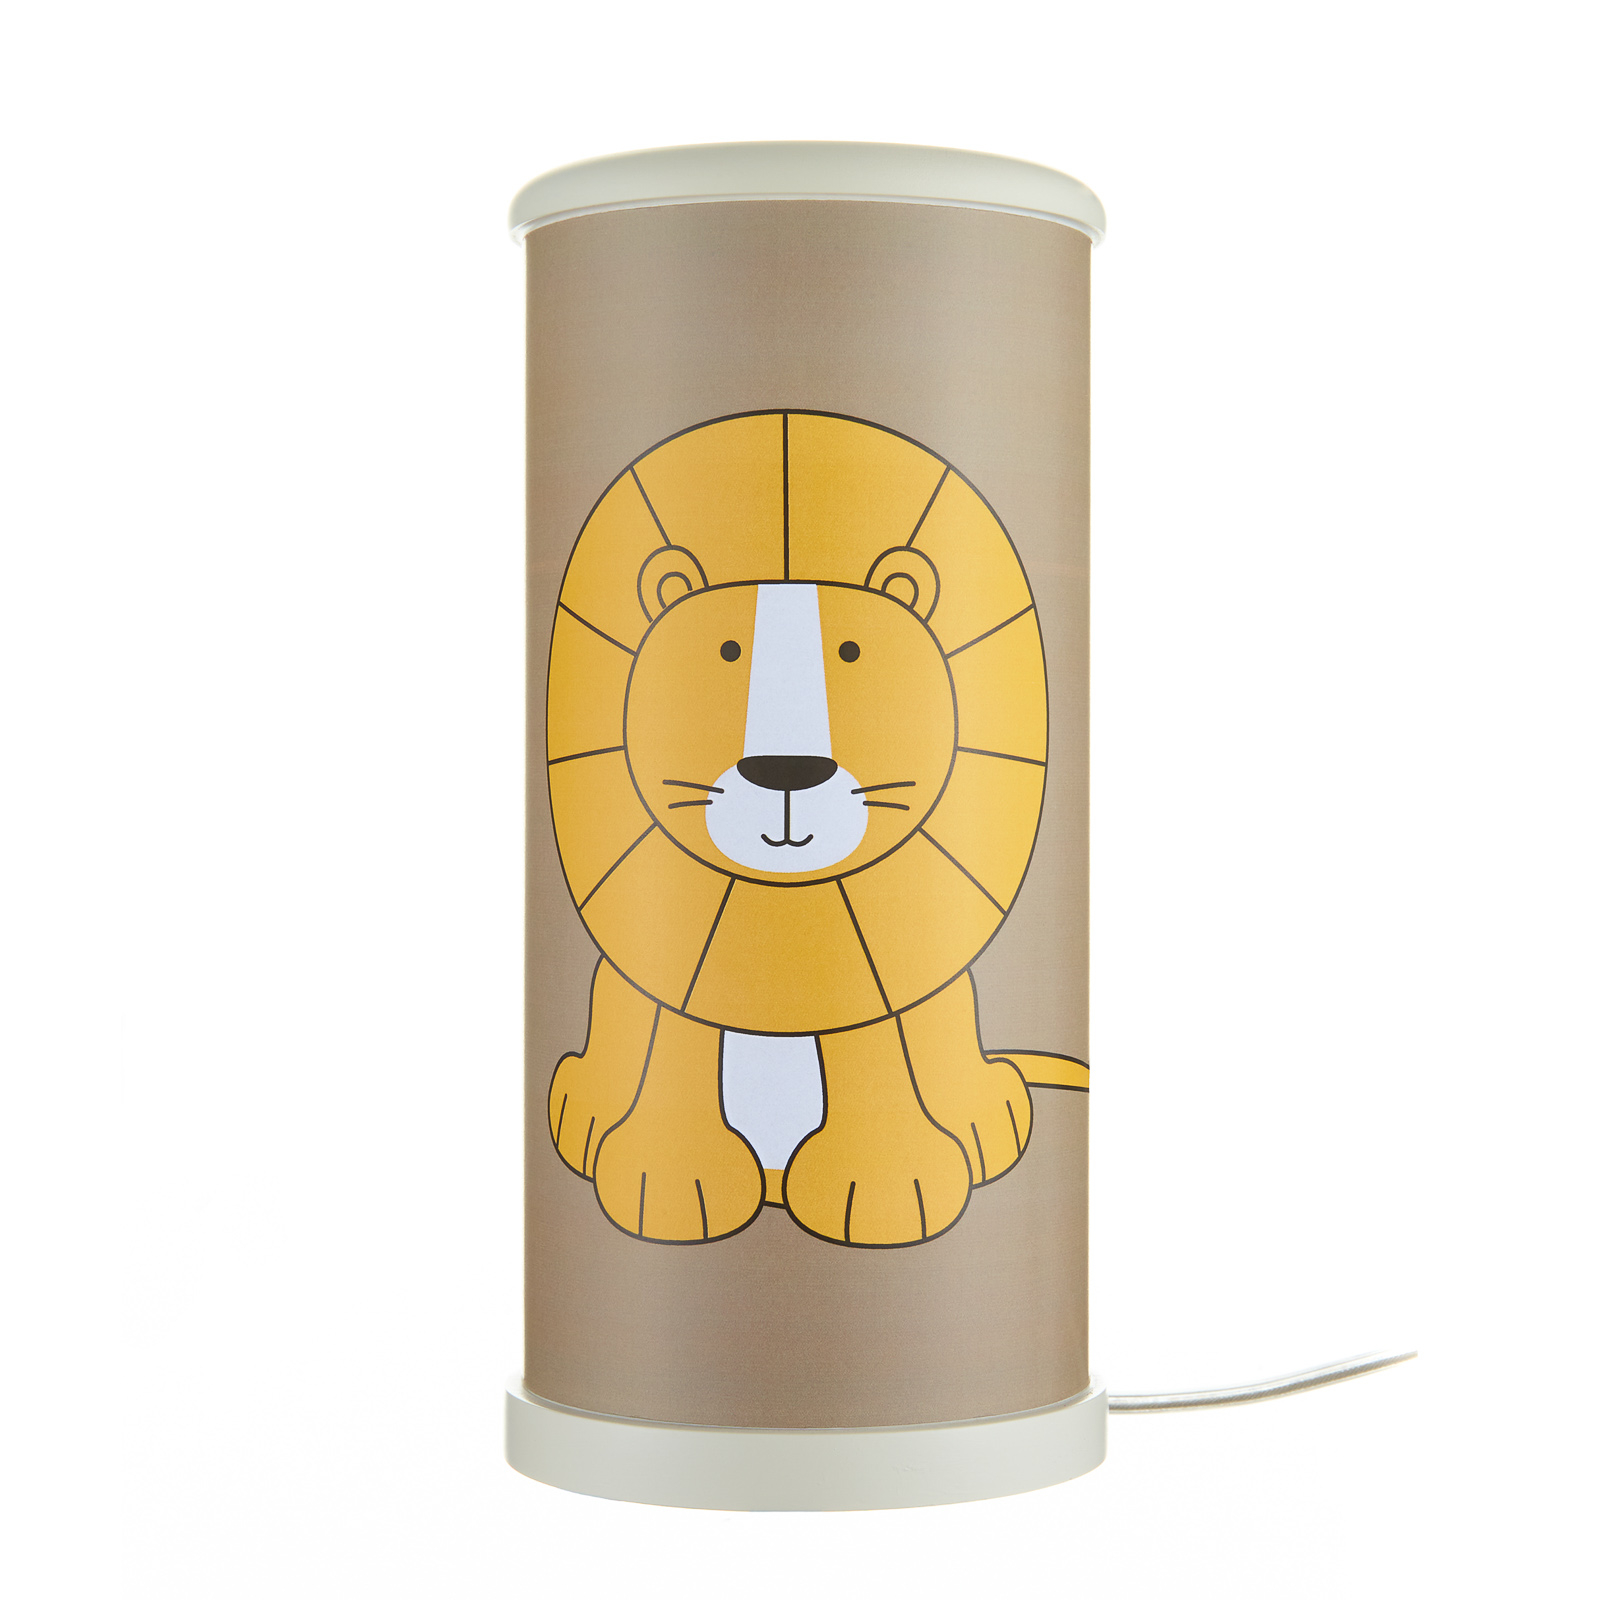 LED επιτραπέζιο φωτιστικό λιοντάρι για το παιδικό δωμάτιο